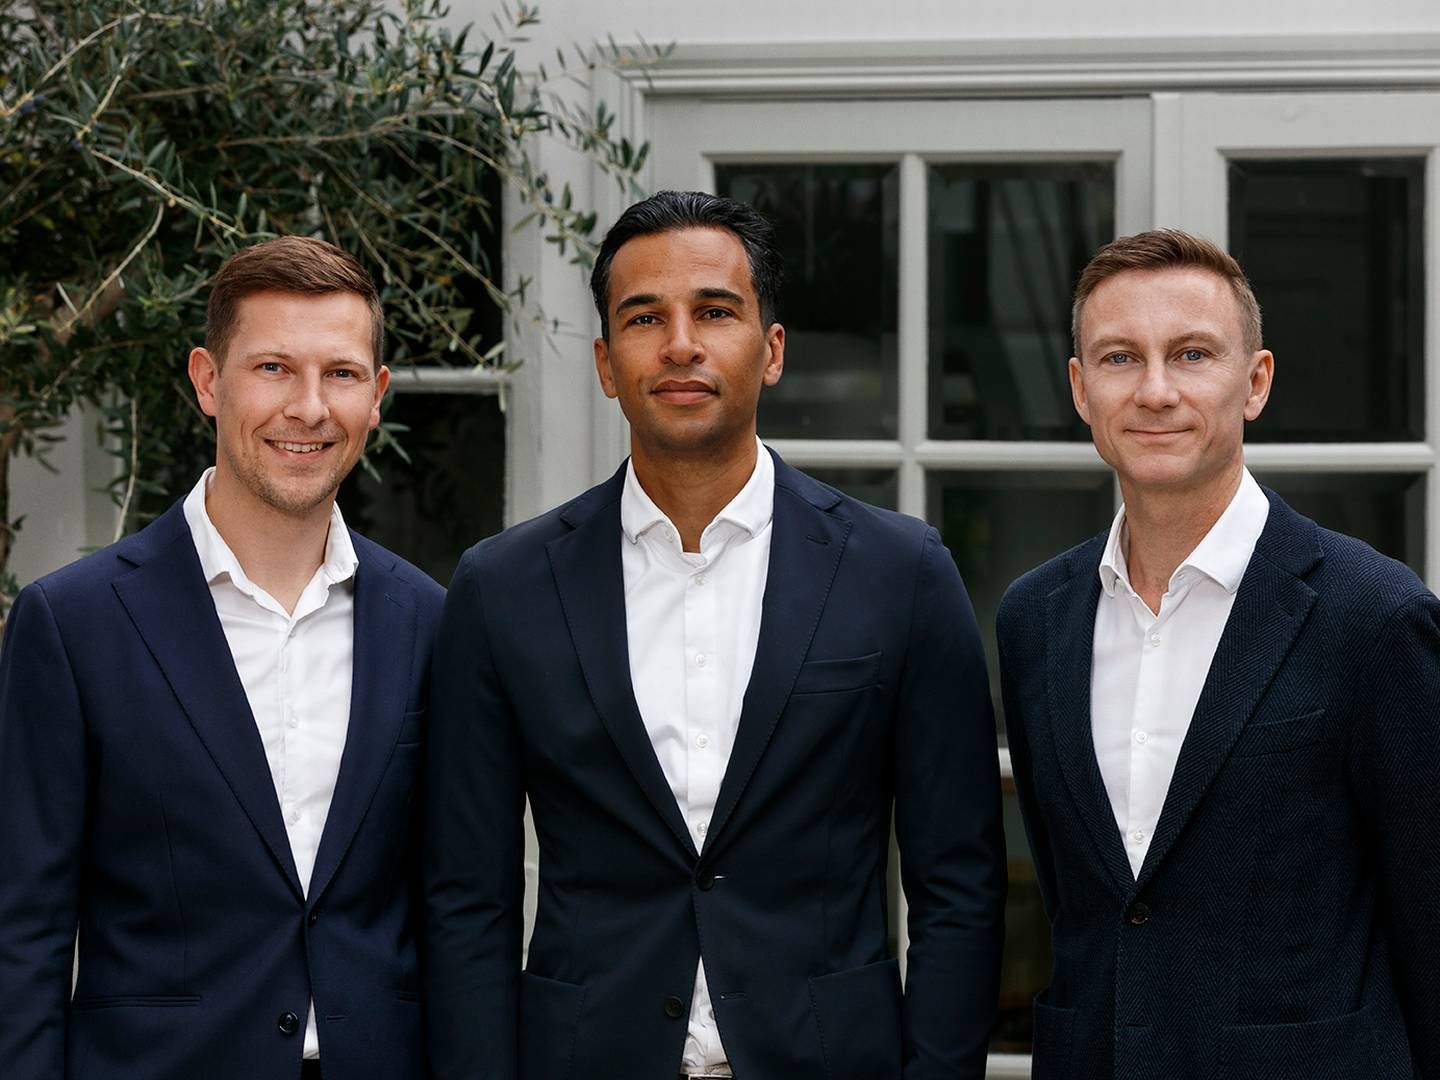 Fra venstre: Andreas Bagunck, ny udviklingsdirektør hos Innovater, Mahad Farah, ny direktør for Innovater Melius og Peter Søgaard, kommende adm. direktør hos Innovater. | Foto: PR / Innovater